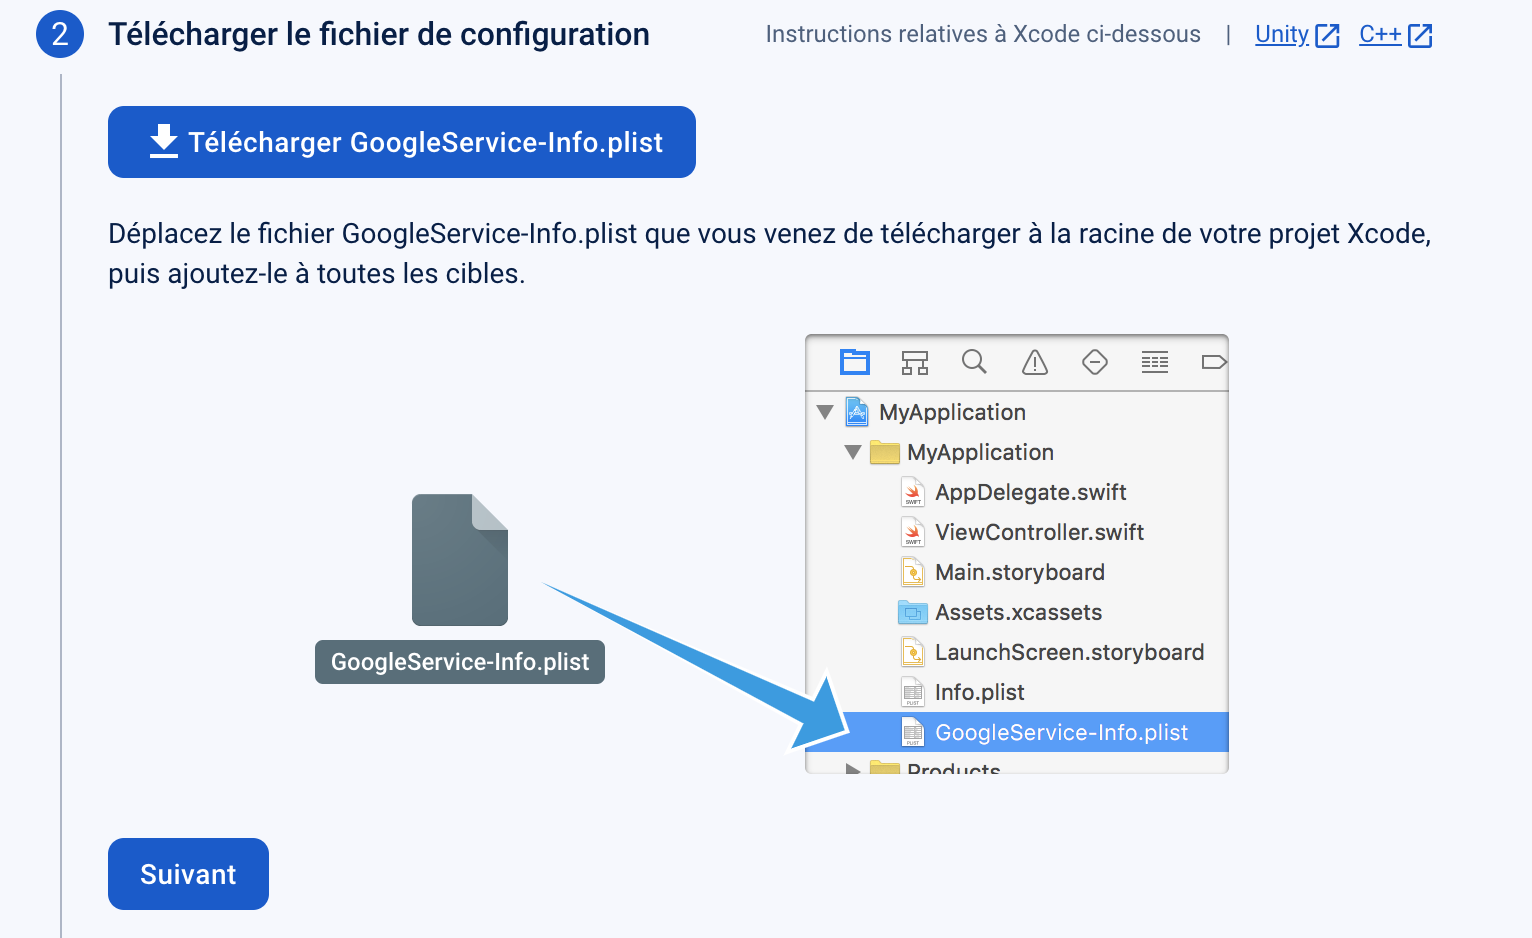 Capture d'écran de Firebase montrant où ajouter le fichier GoogleService-Info.plist